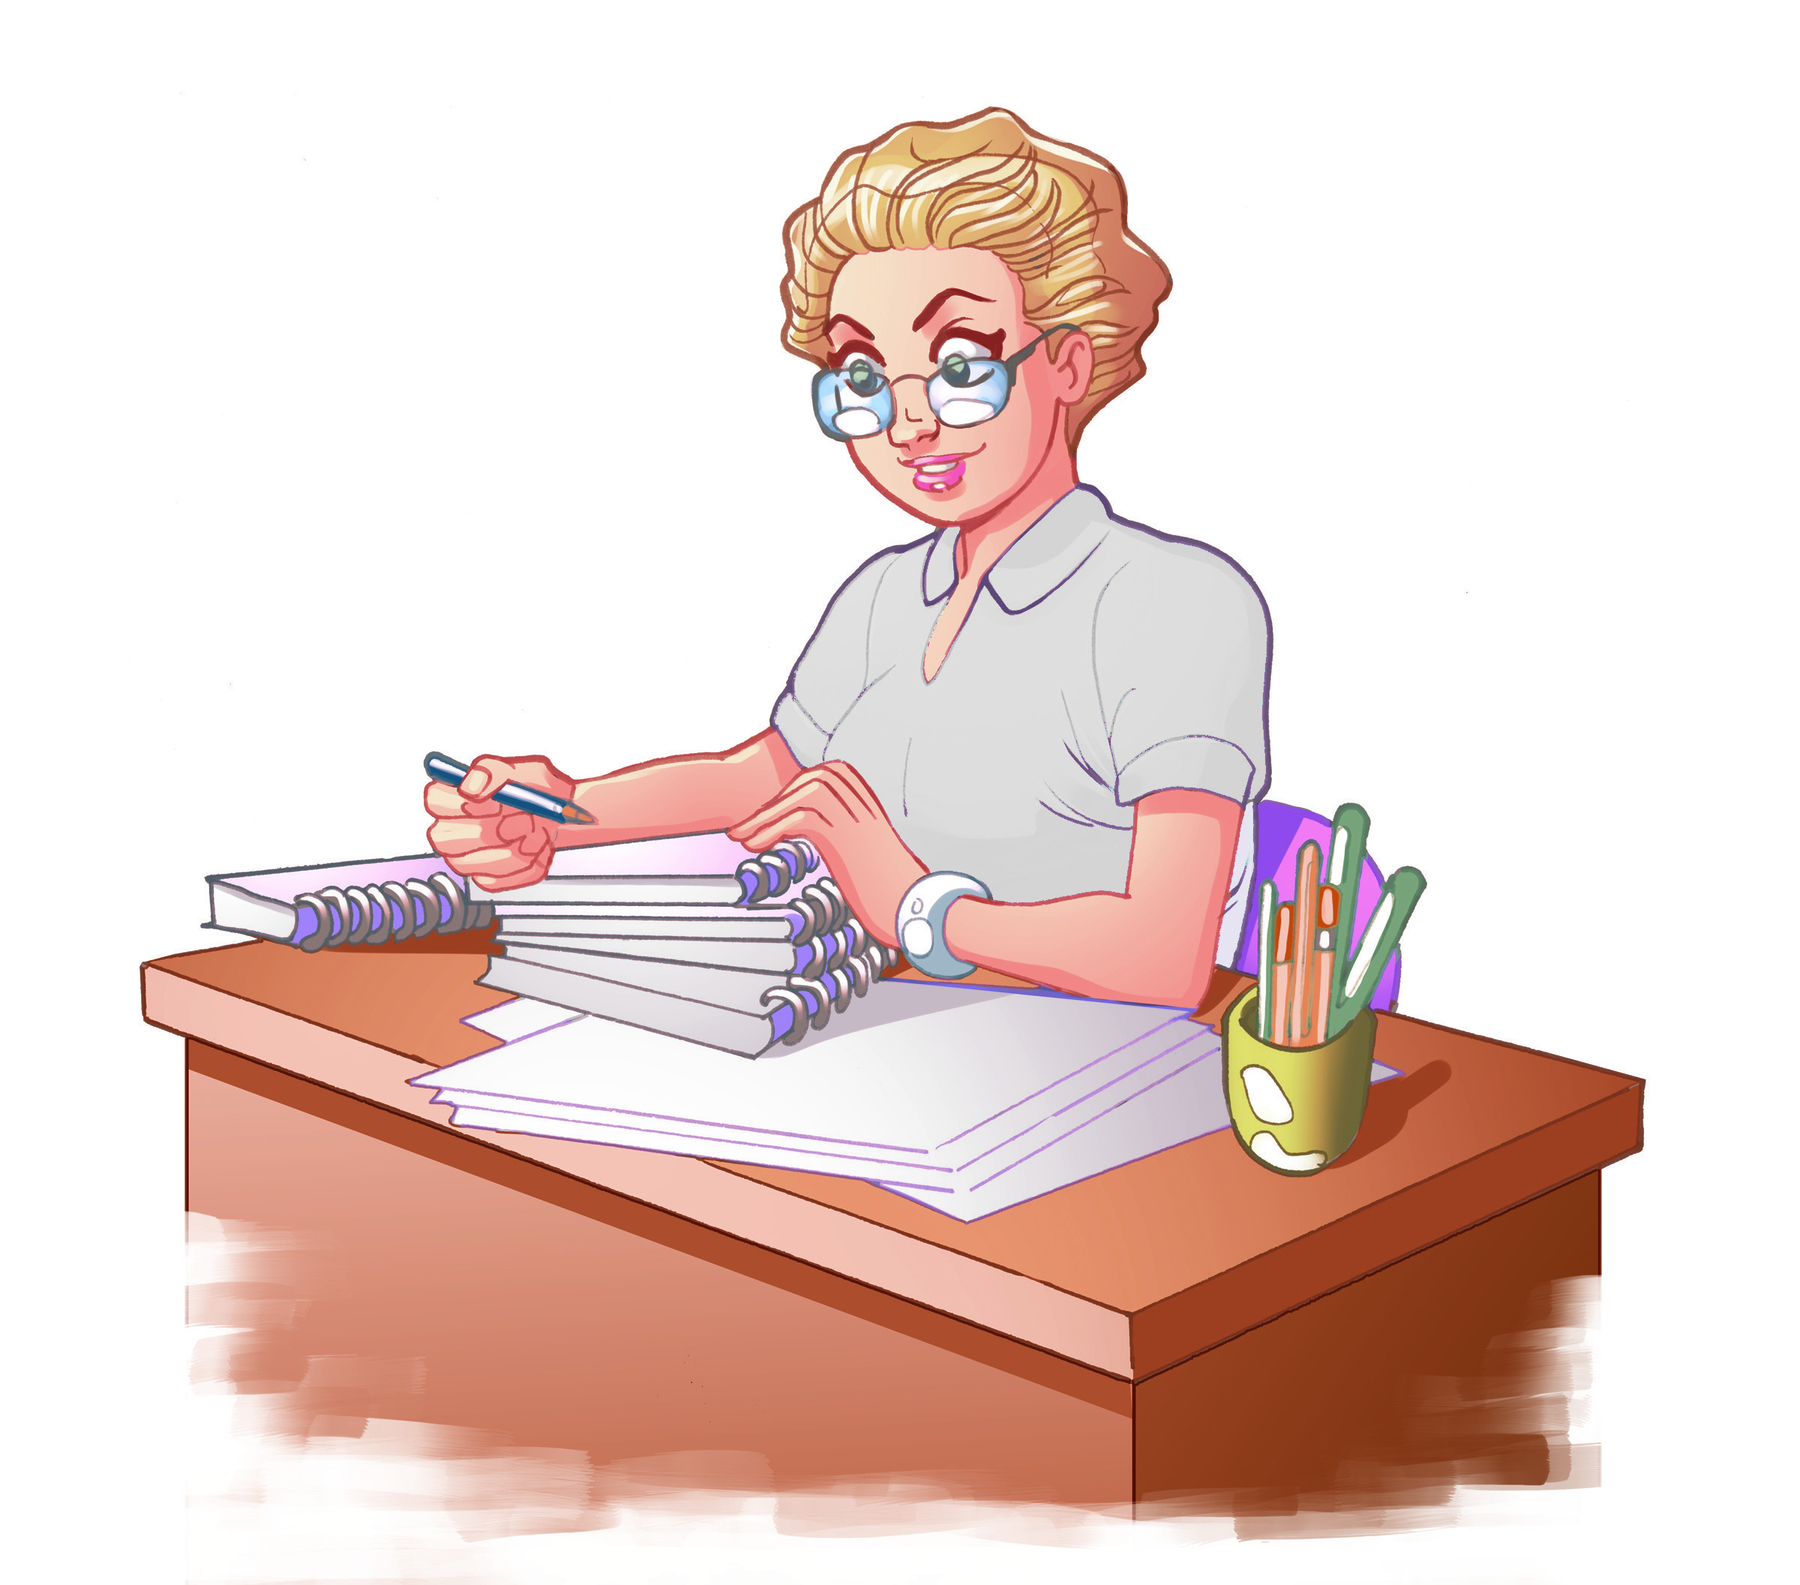 Ilustração. Mulher de cabelo loiro, óculos, relógio no pulso esquerdo e camisa cinza. Ela está segurando um lápis com a mão direita, sentada de frente para uma mesa com uma pilha de cadernos. À direita, suporte com canetas.